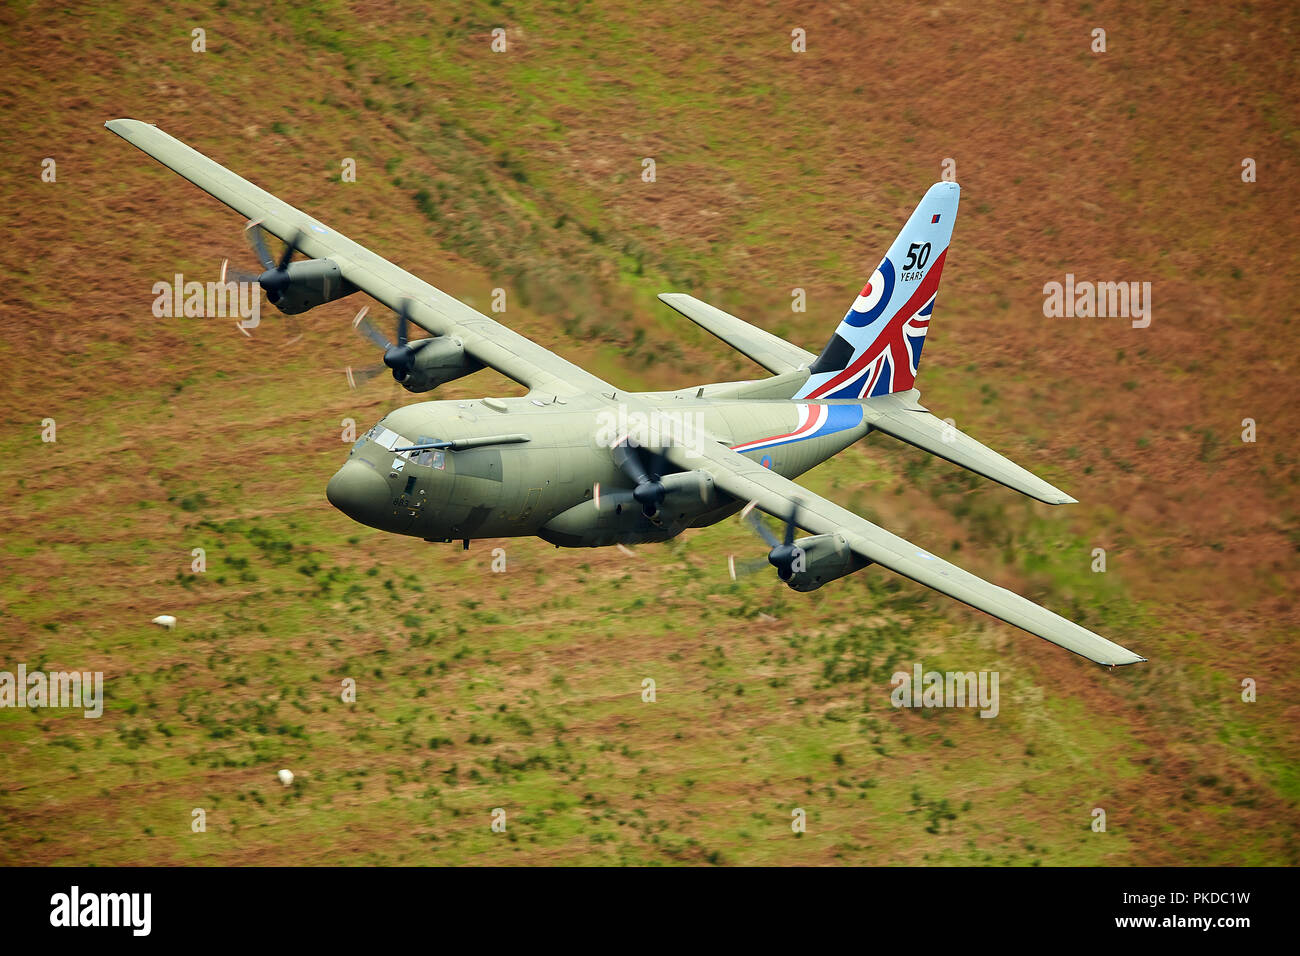 RAF Hercules C-130 in the Mach Loop, North Wales, UK Stock Photo